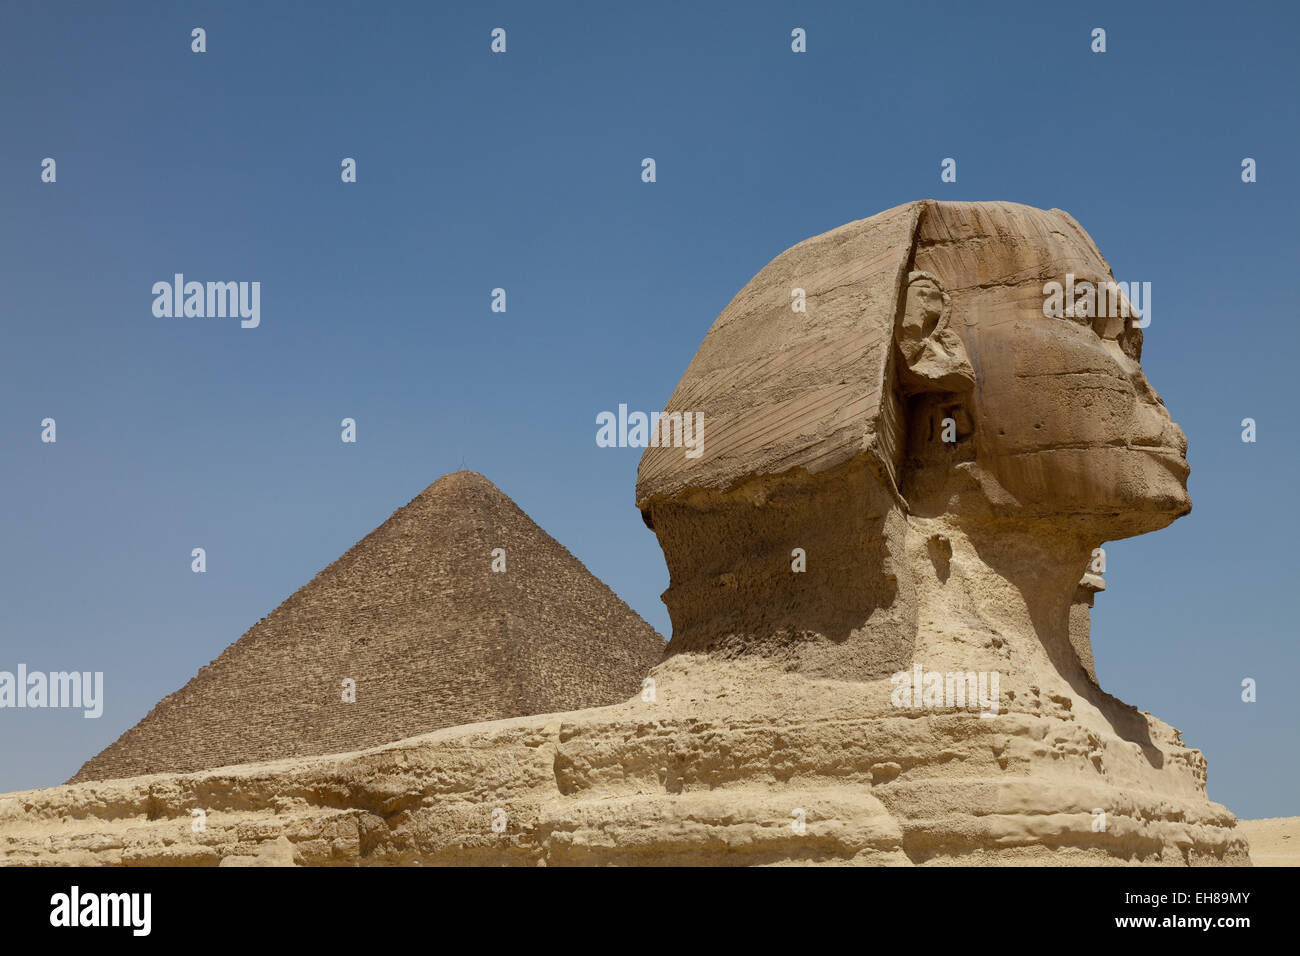 Le Sphinx et la grande pyramide de Gizeh, UNESCO World Heritage Site, près du Caire, Egypte, Afrique du Nord, Afrique Banque D'Images